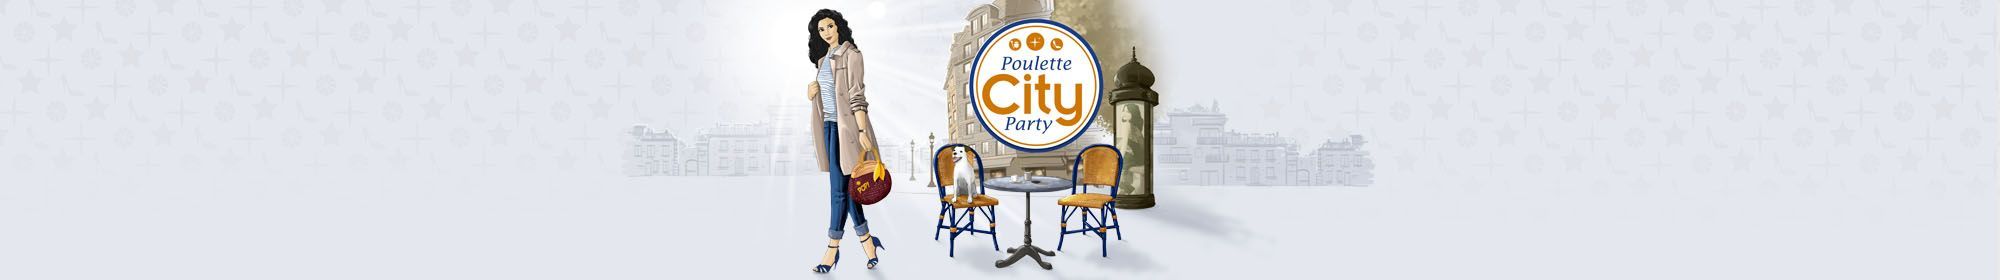 Poulette City Party